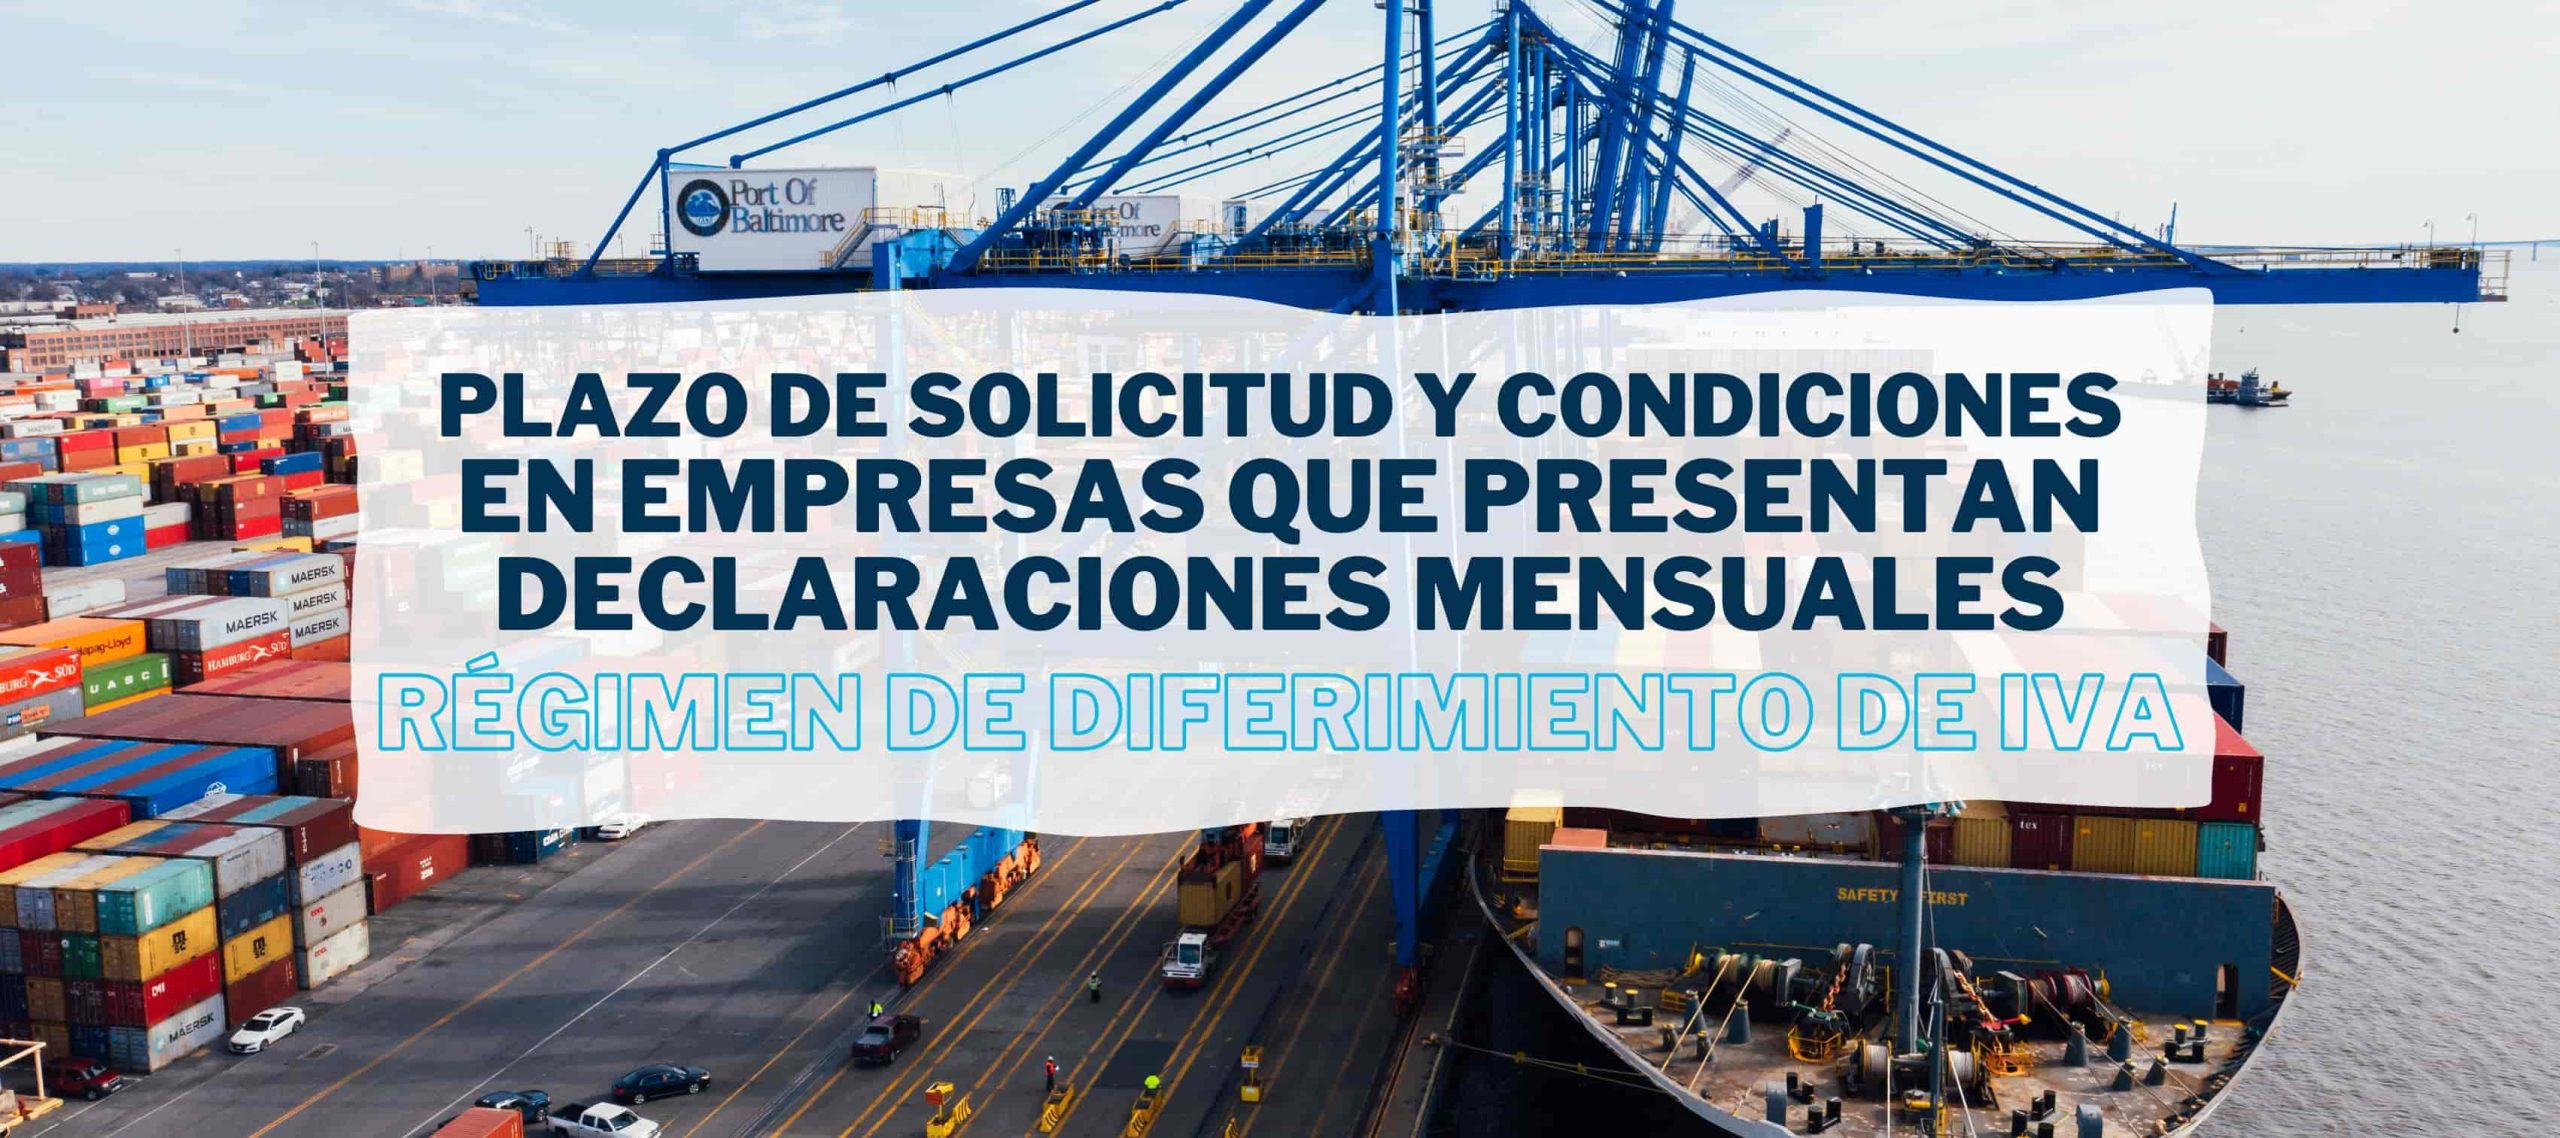 Aduana de mercancías en el puerto para hablar del IVA diferido en la importación.